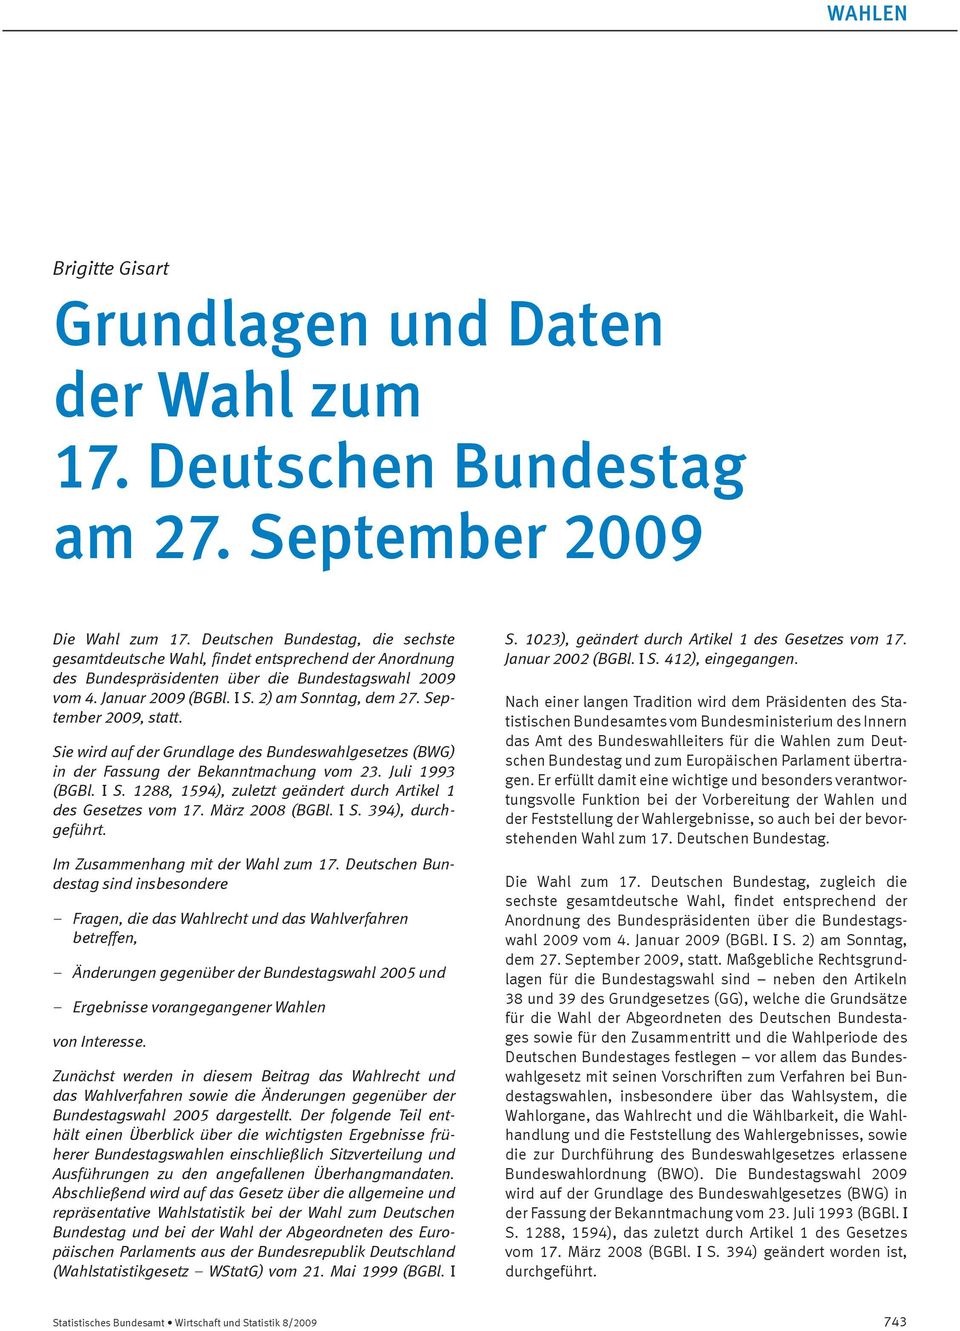 September 2009, statt. Sie wird auf der Grundlage des Bundeswahlgesetzes (BWG) in der Fassung der Bekanntmachung vom 23. Juli 1993 (BGBl. I S.